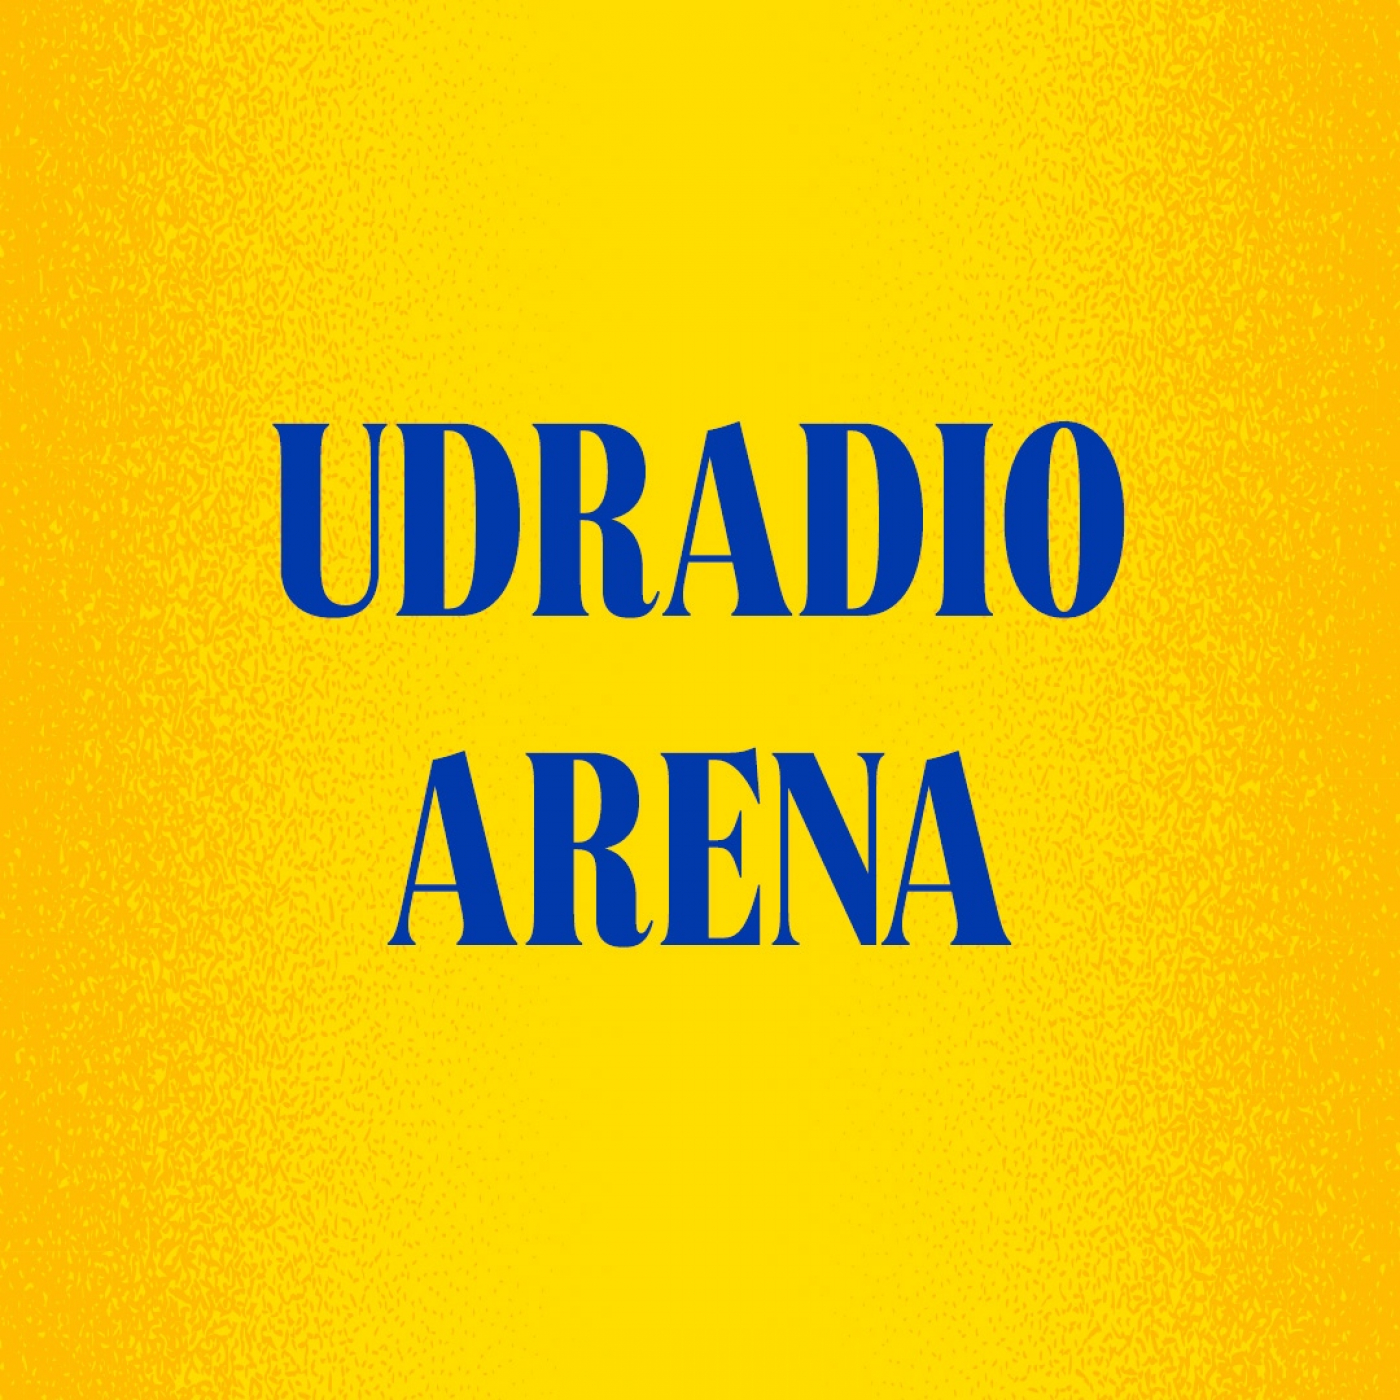 07-06-2021 udradio arena.